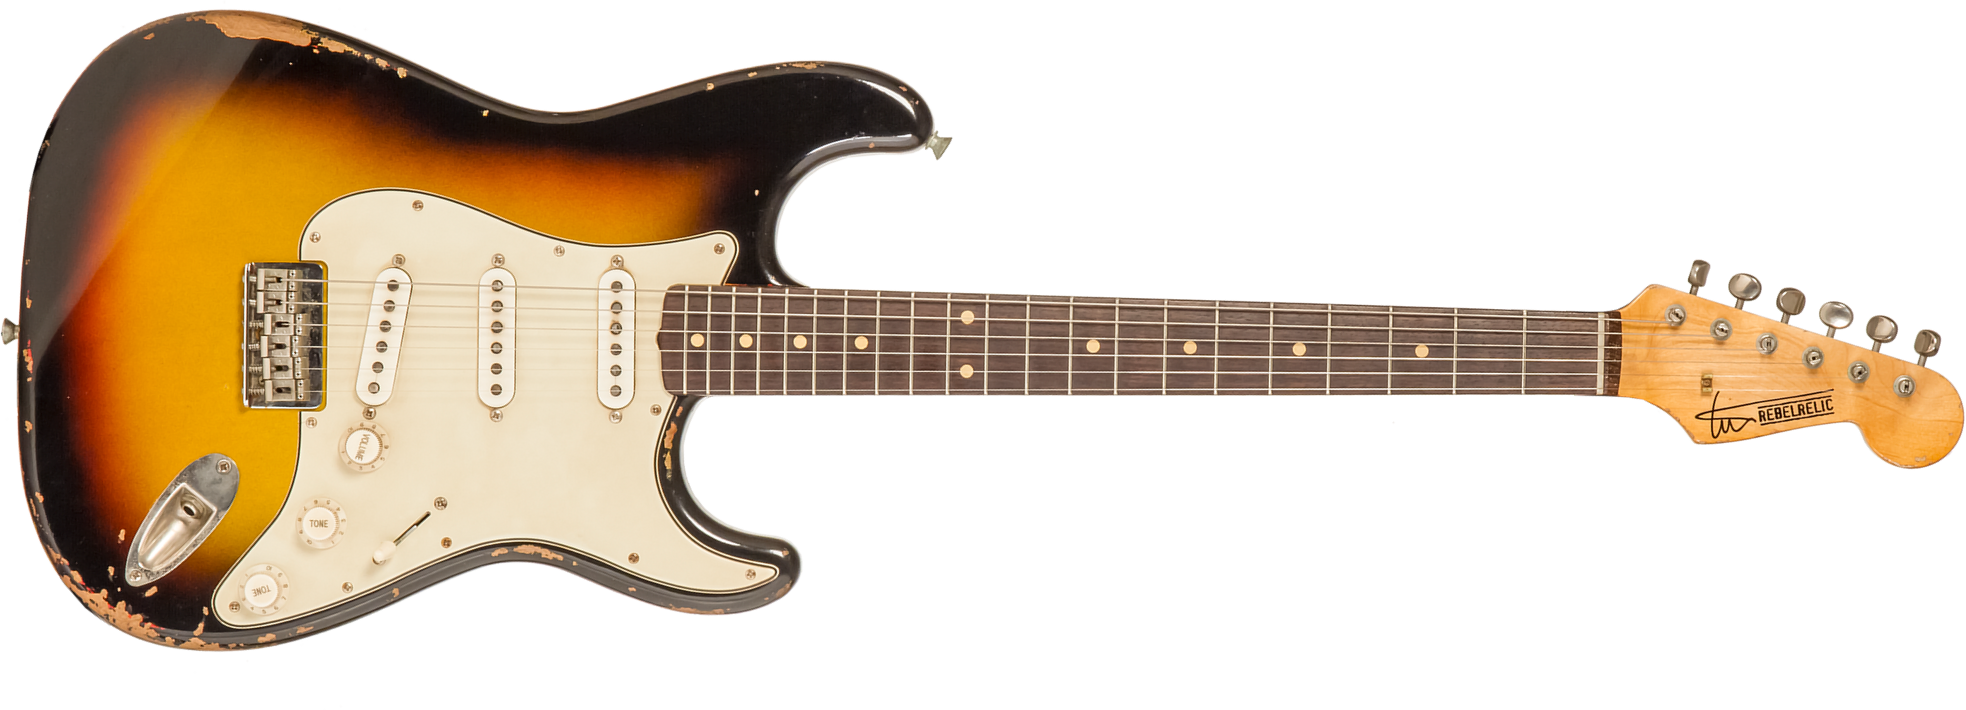 Rebelrelic S-series 1961 Hardtail 3s Ht Rw #231008 - 3-tone Sunburst - E-Gitarre in Str-Form - Main picture